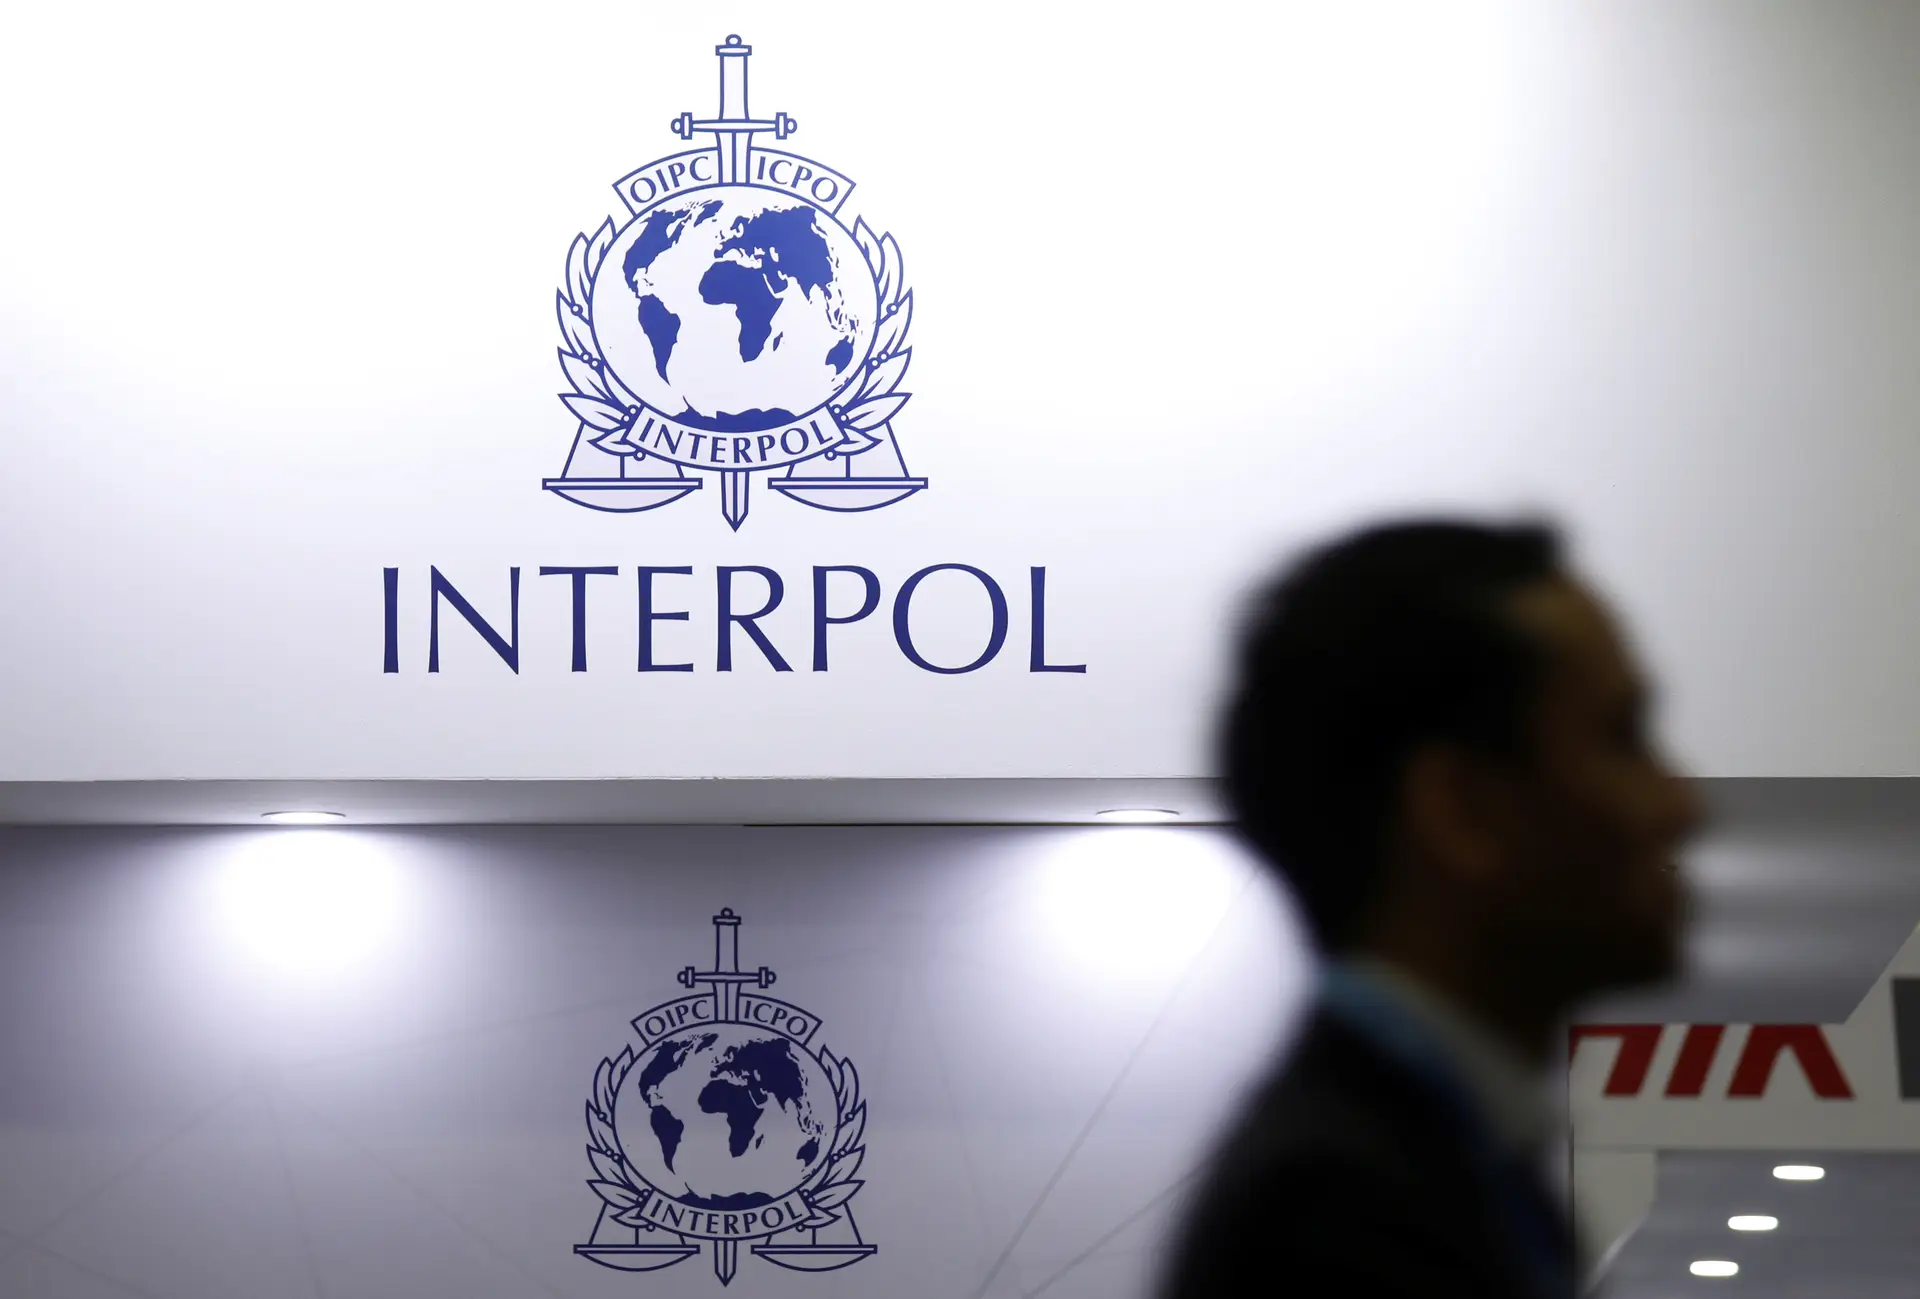 Homem procurado pela Interpol por homicídio agravado no Brasil detido em Lisboa